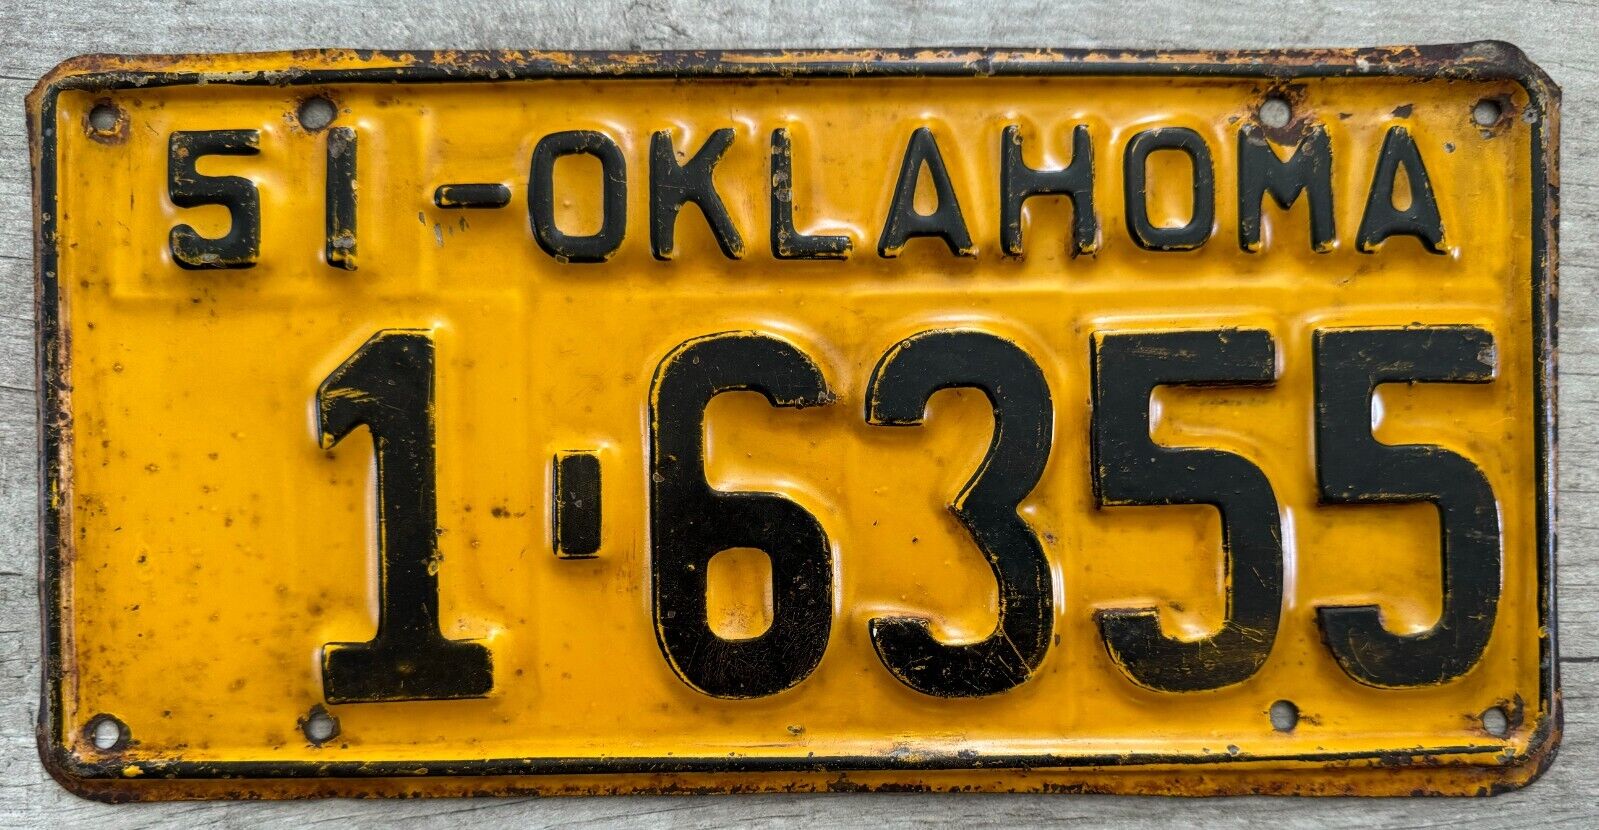 1951 Oklahoma License Plate - Nice Original Paint